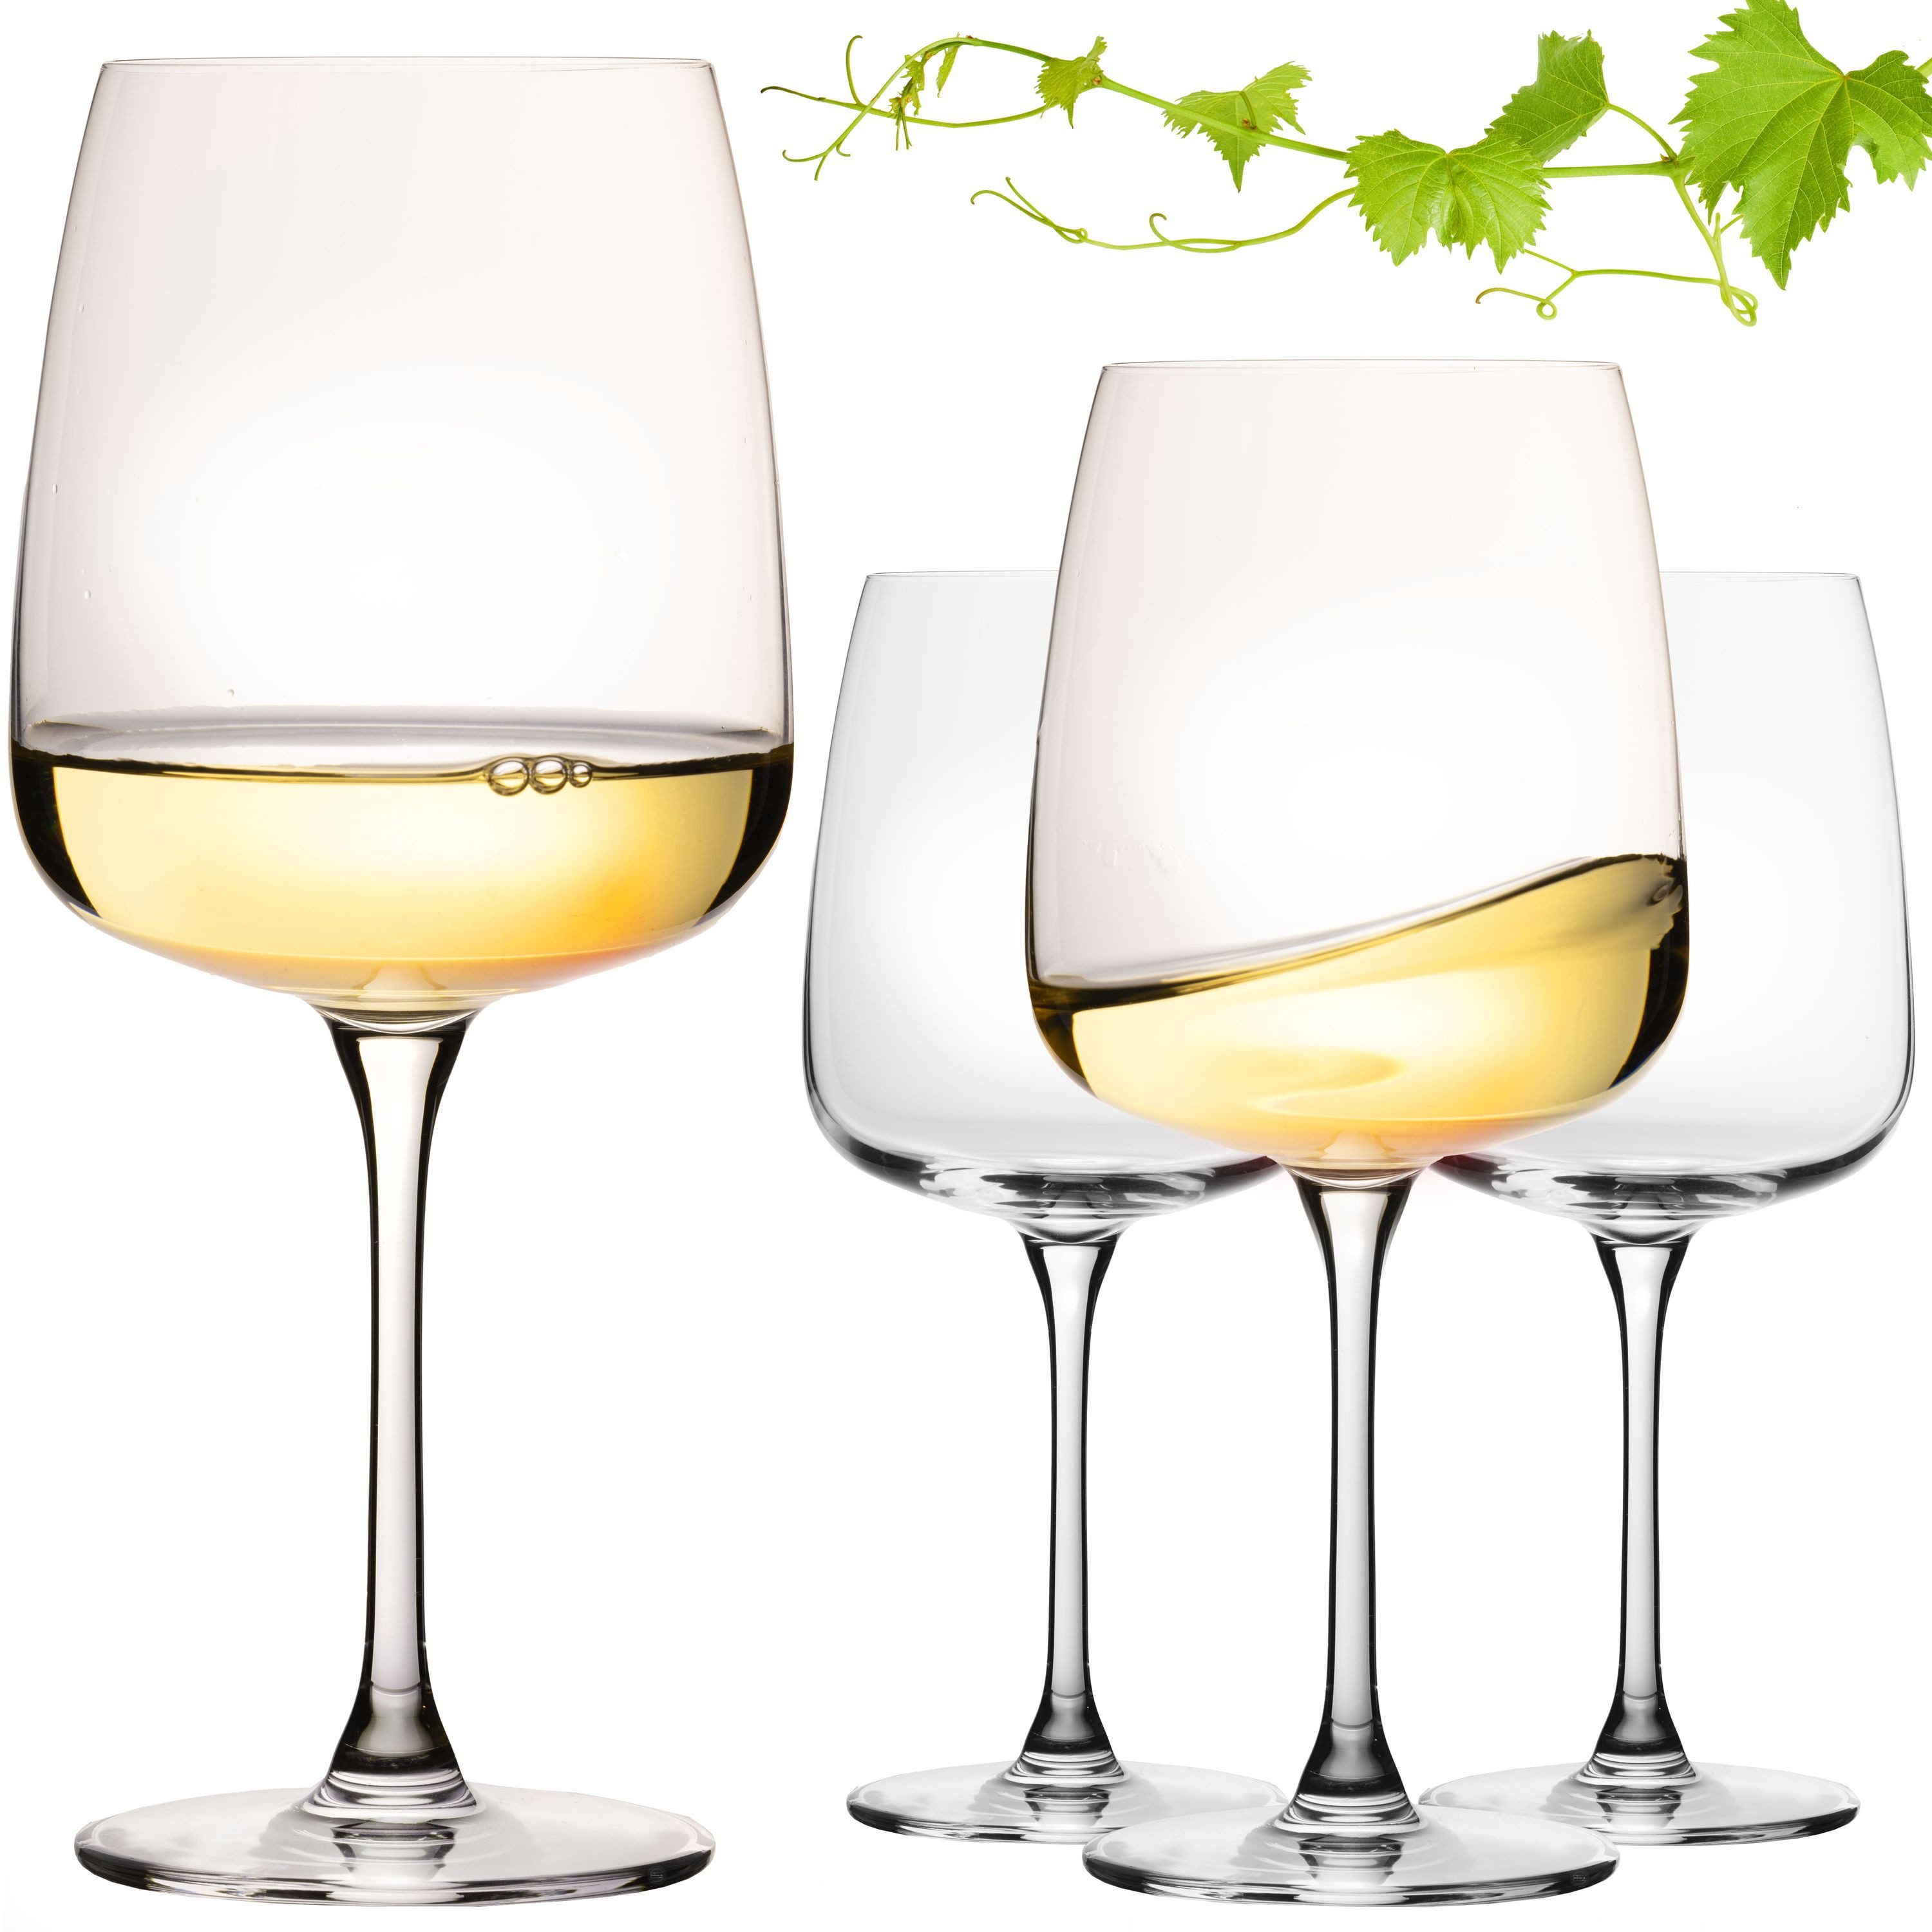 IMPERIAL glass Weinglas Große Eckige Weißweingläser 480ml "Milano" Set 4-Teilig, Crystalline Glas, Chardonnay Glas aus Crystalline Glas Spülmaschinenfest